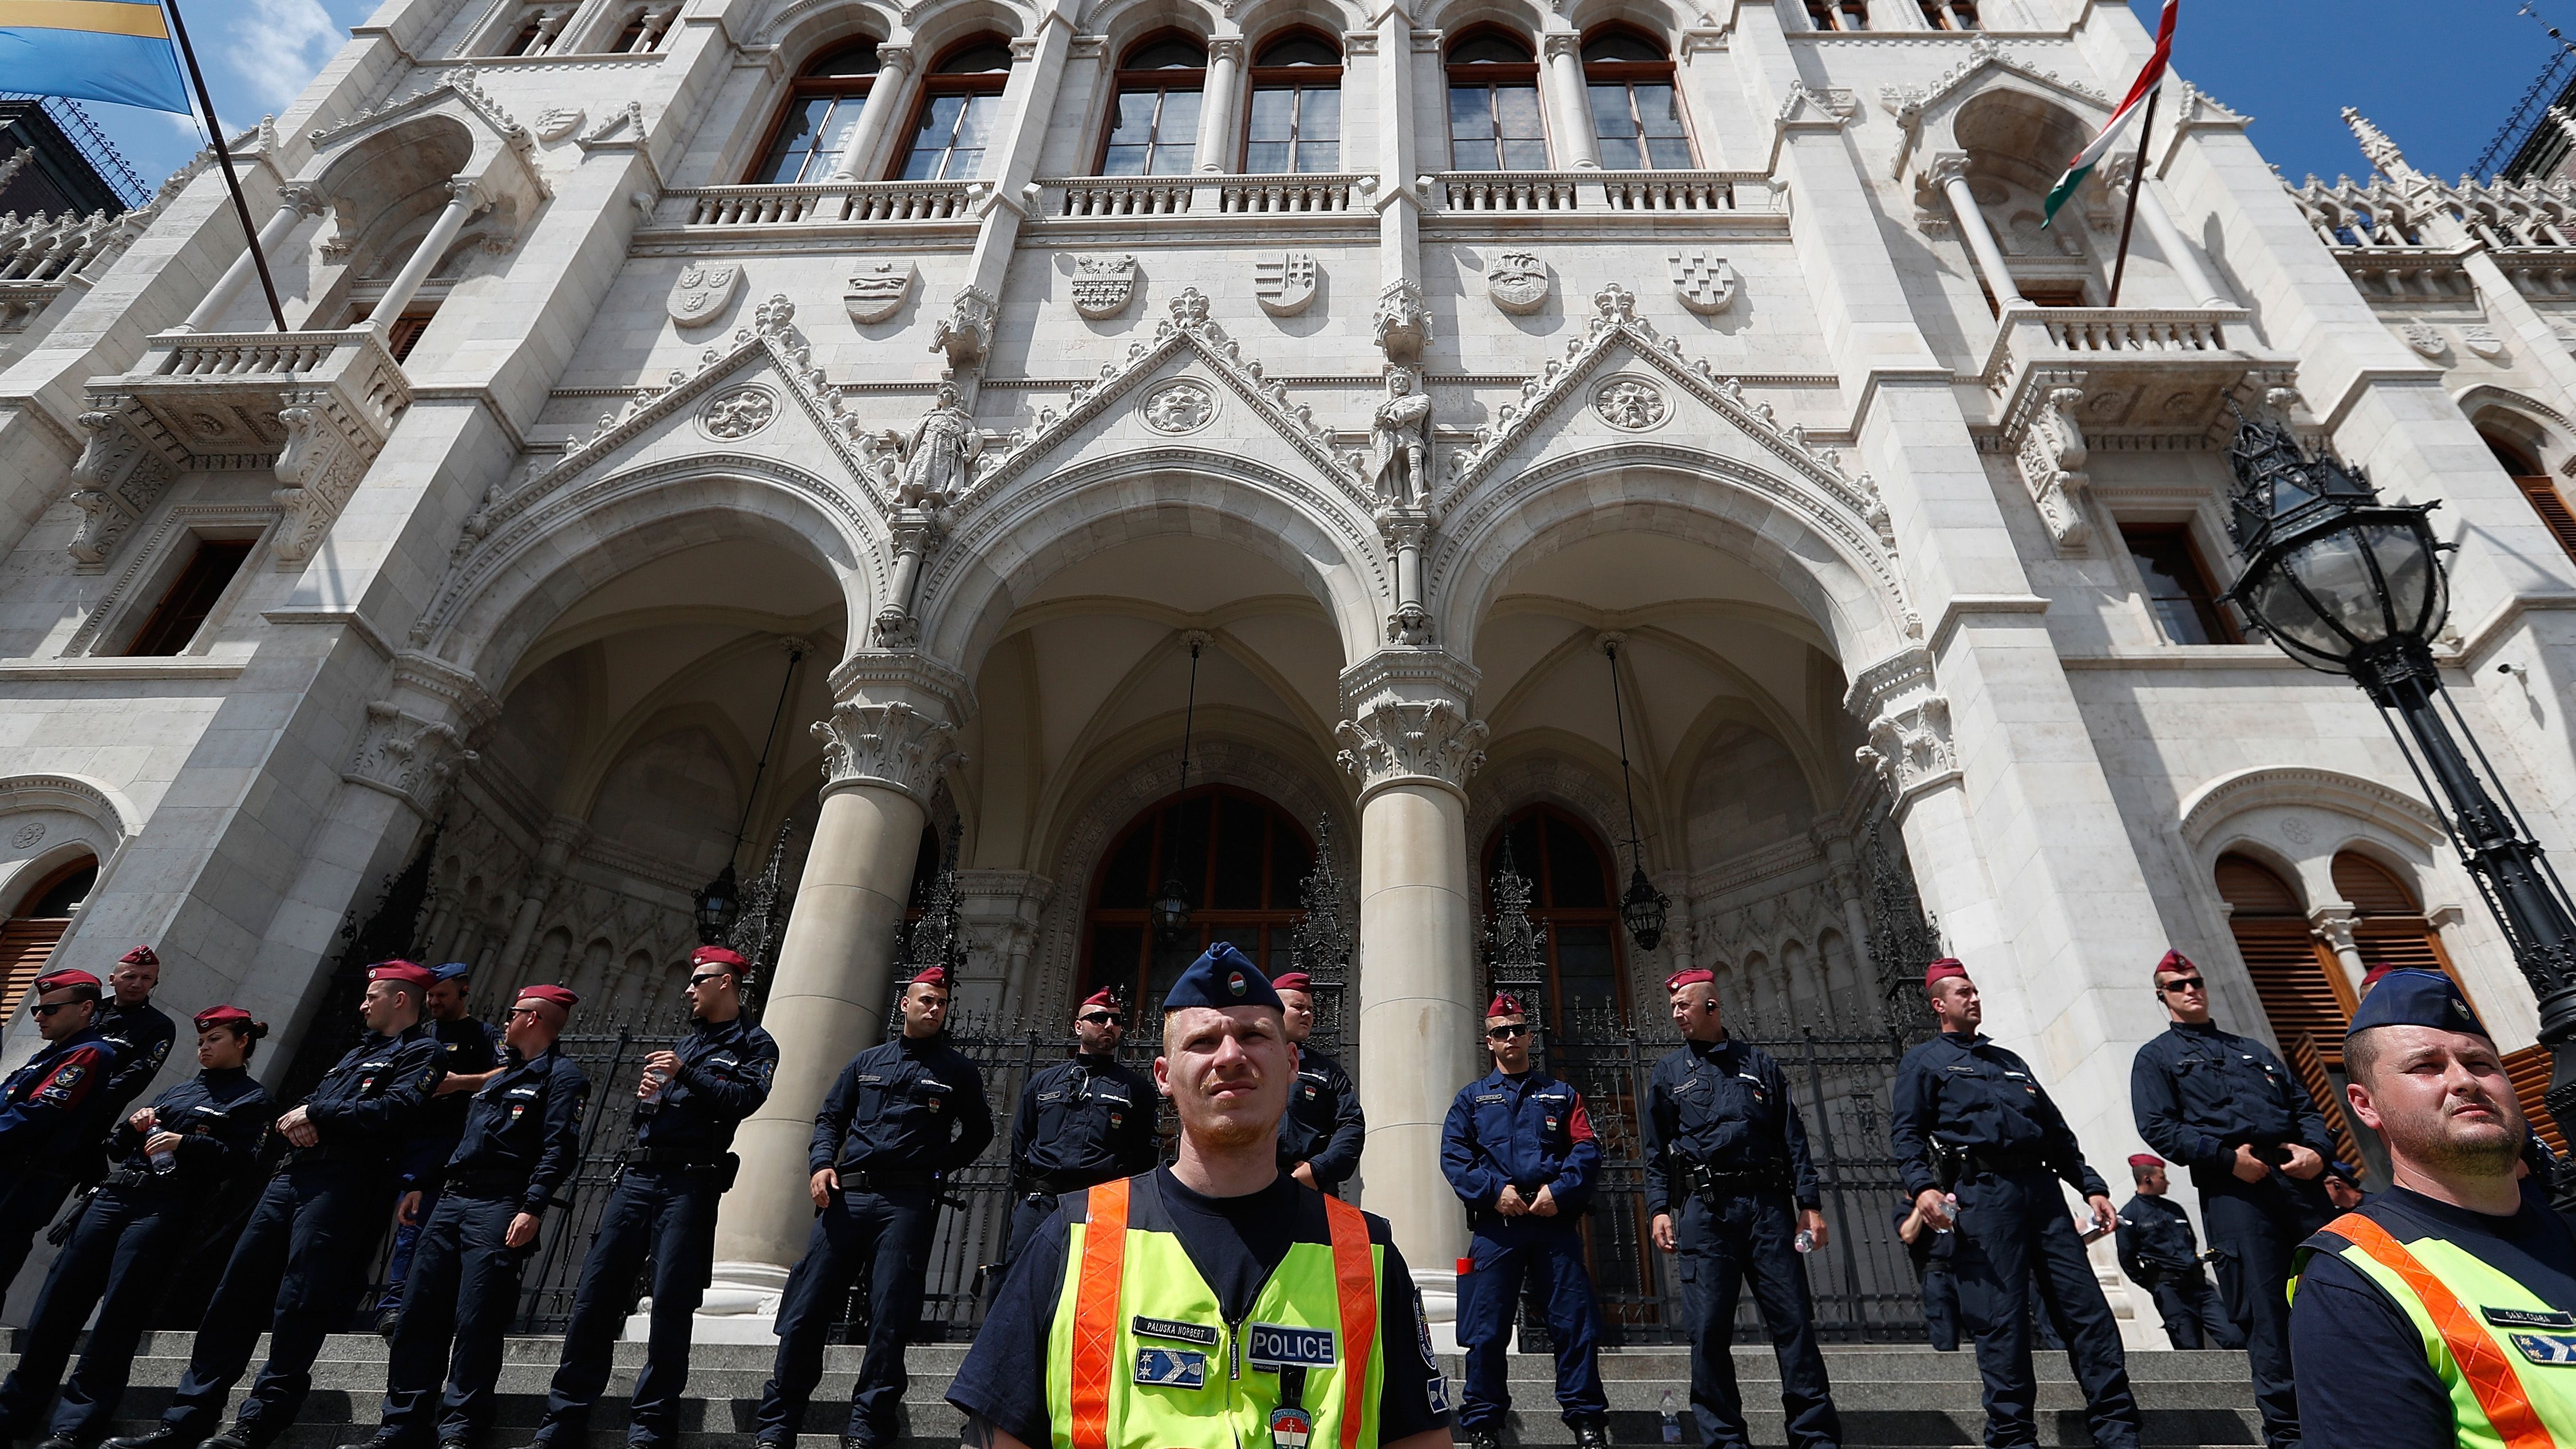 В Угорщині новий парламент склав присягу під антиурядові гасла